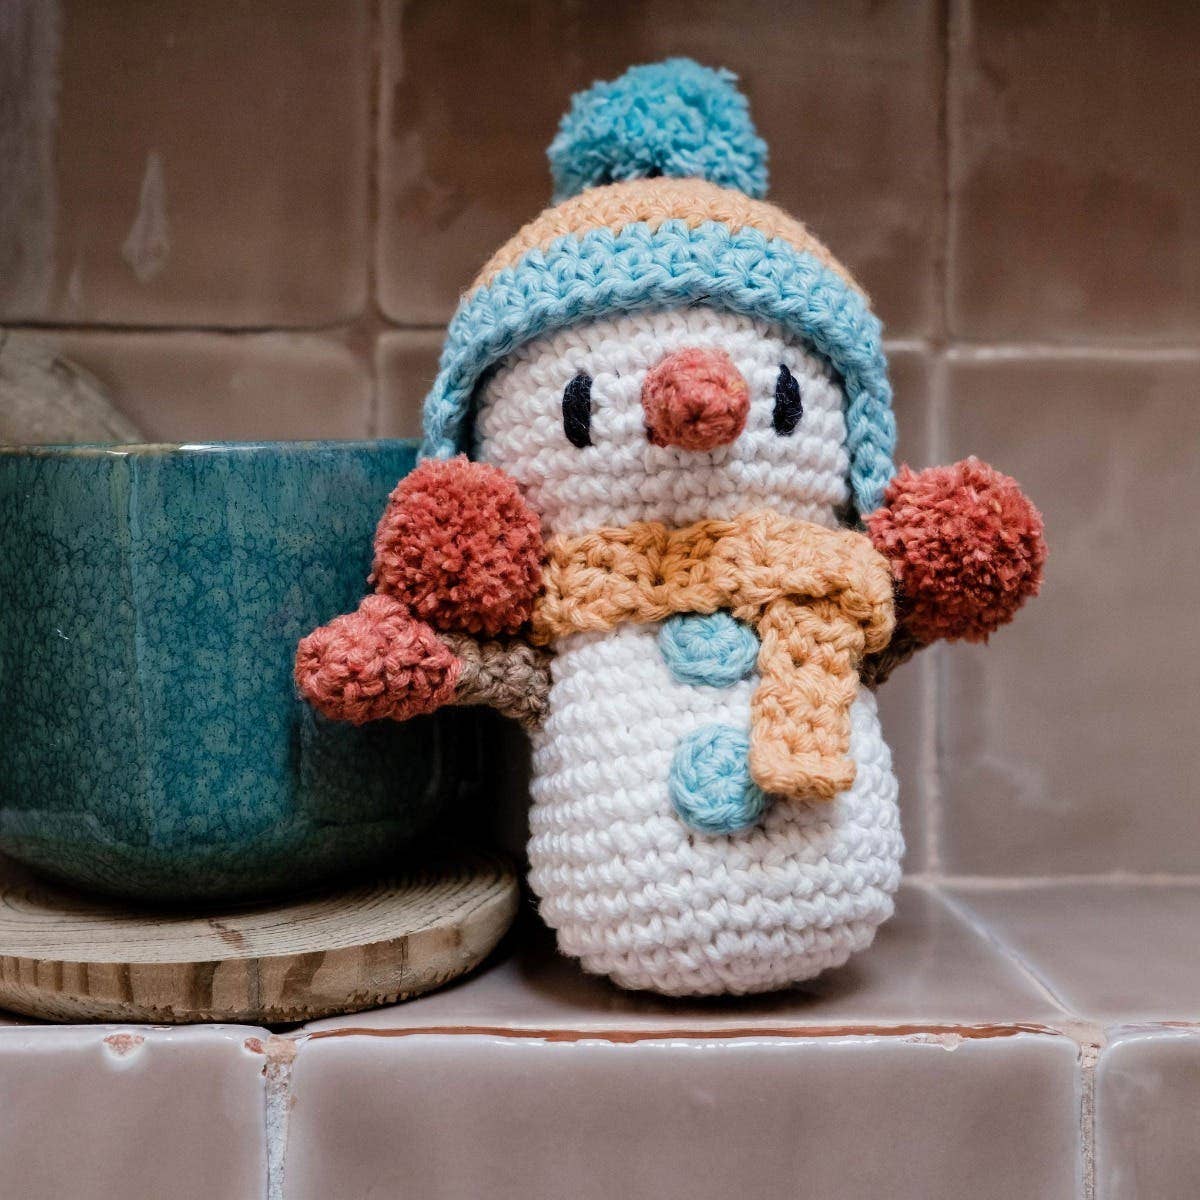 DIY Crochet Kit Winter Snowman Jingle